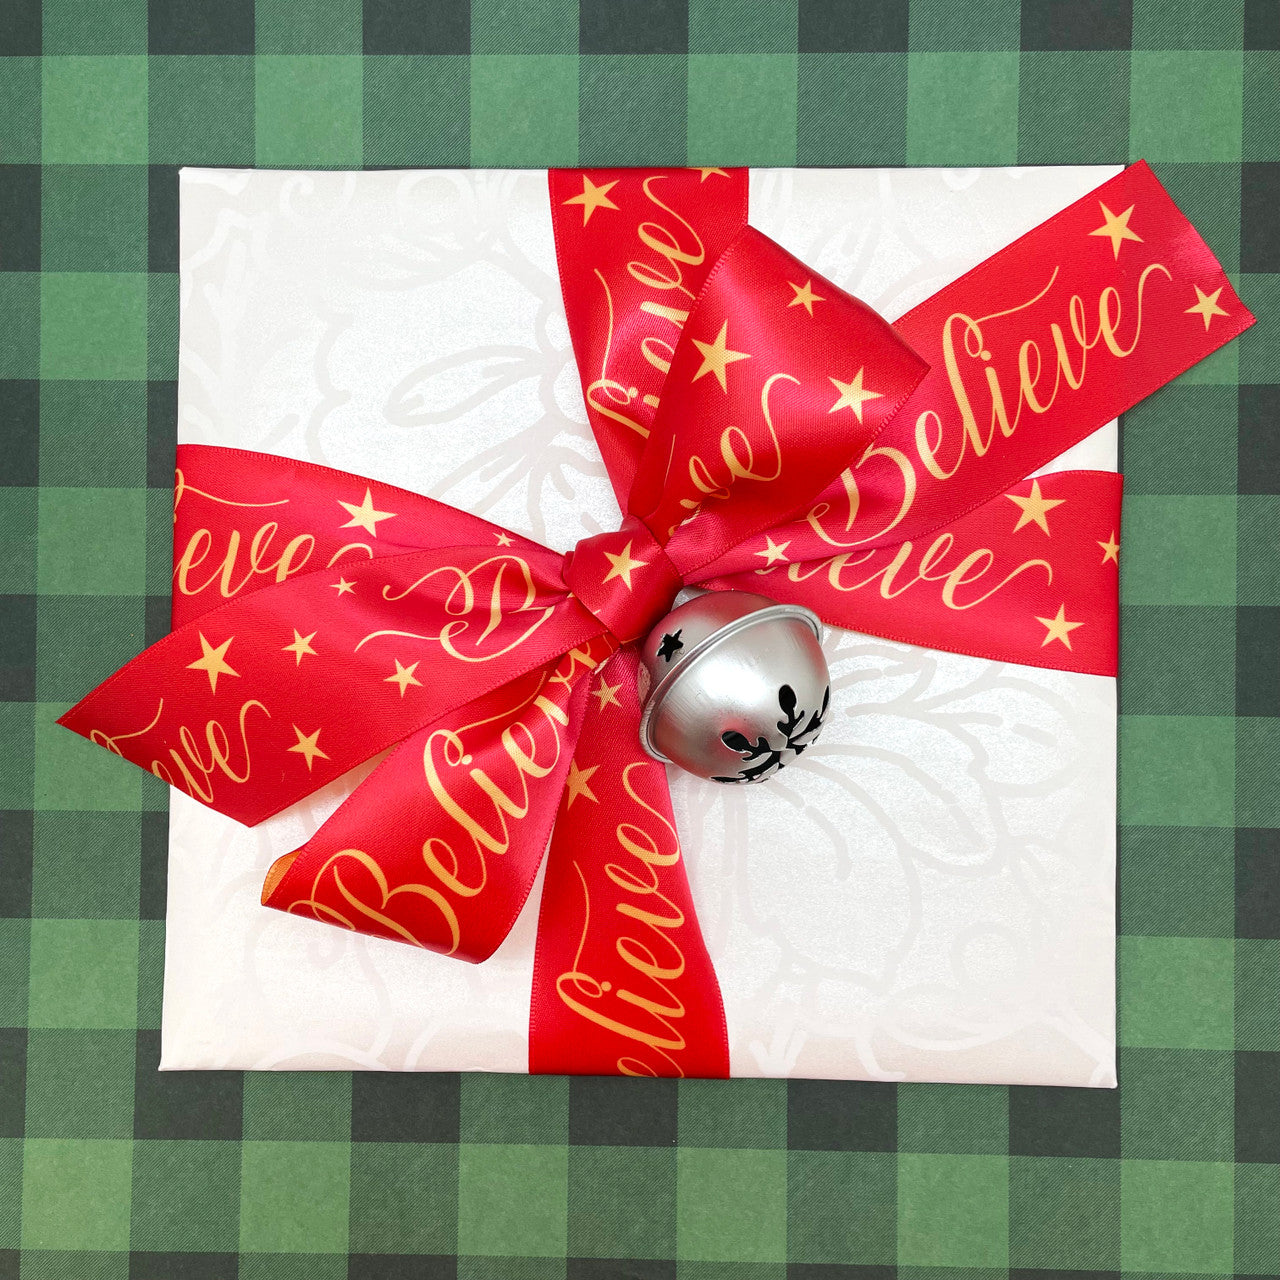   Gift Card - Print Holiday Wrapping (Print at